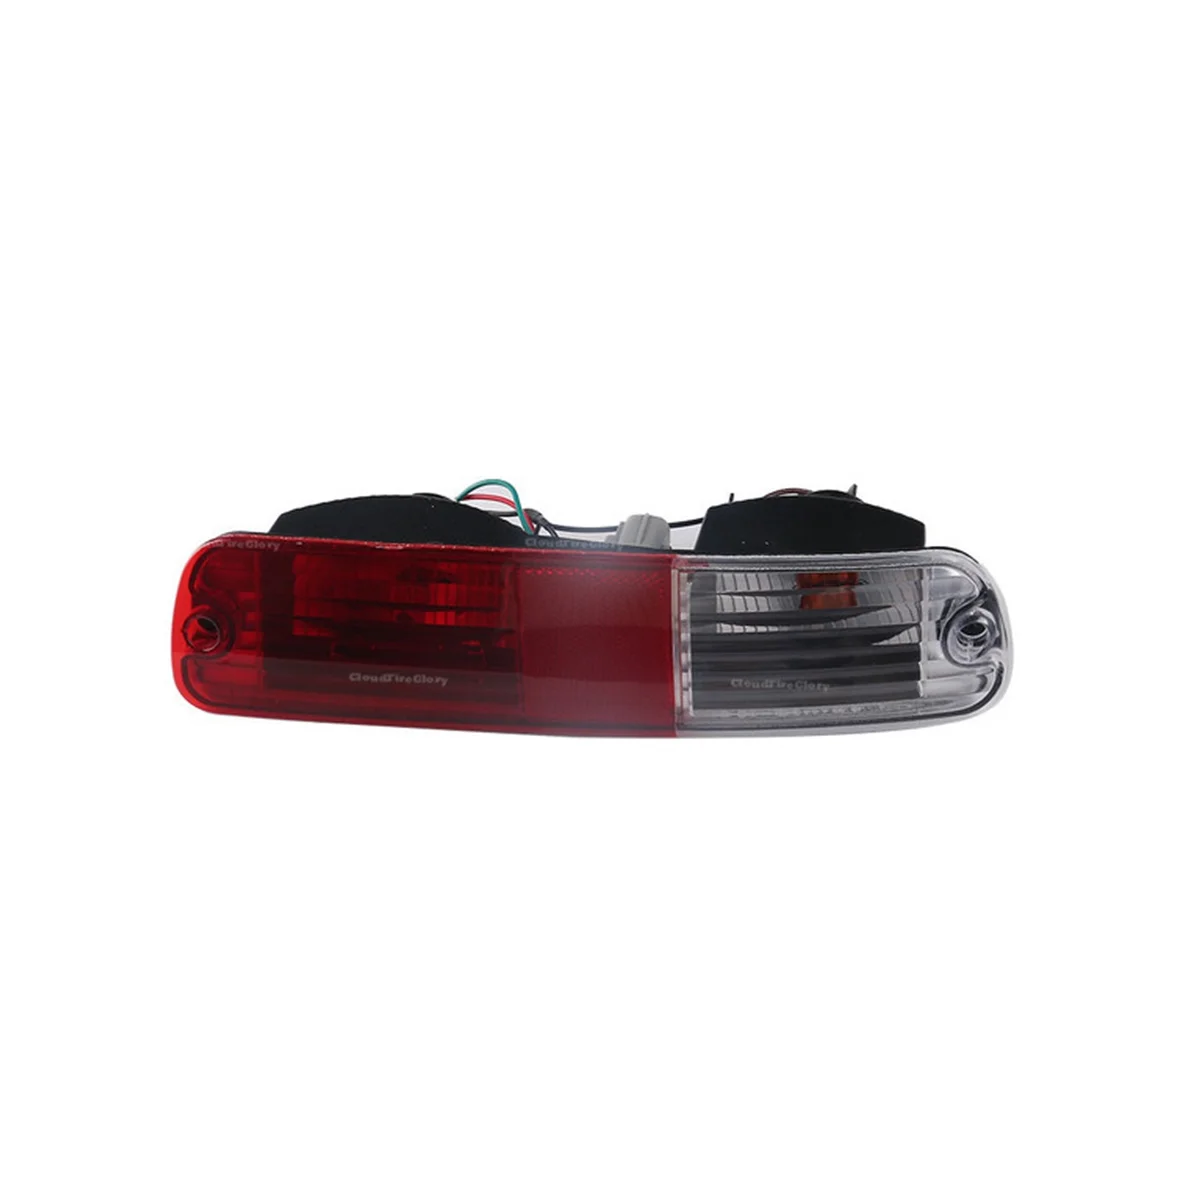 

Автомобильный левый задний бампер, противотуманный фонарь, парковочная лампа, задние фонари для Mitsubishi Pajero Montero V73 V77 02-06